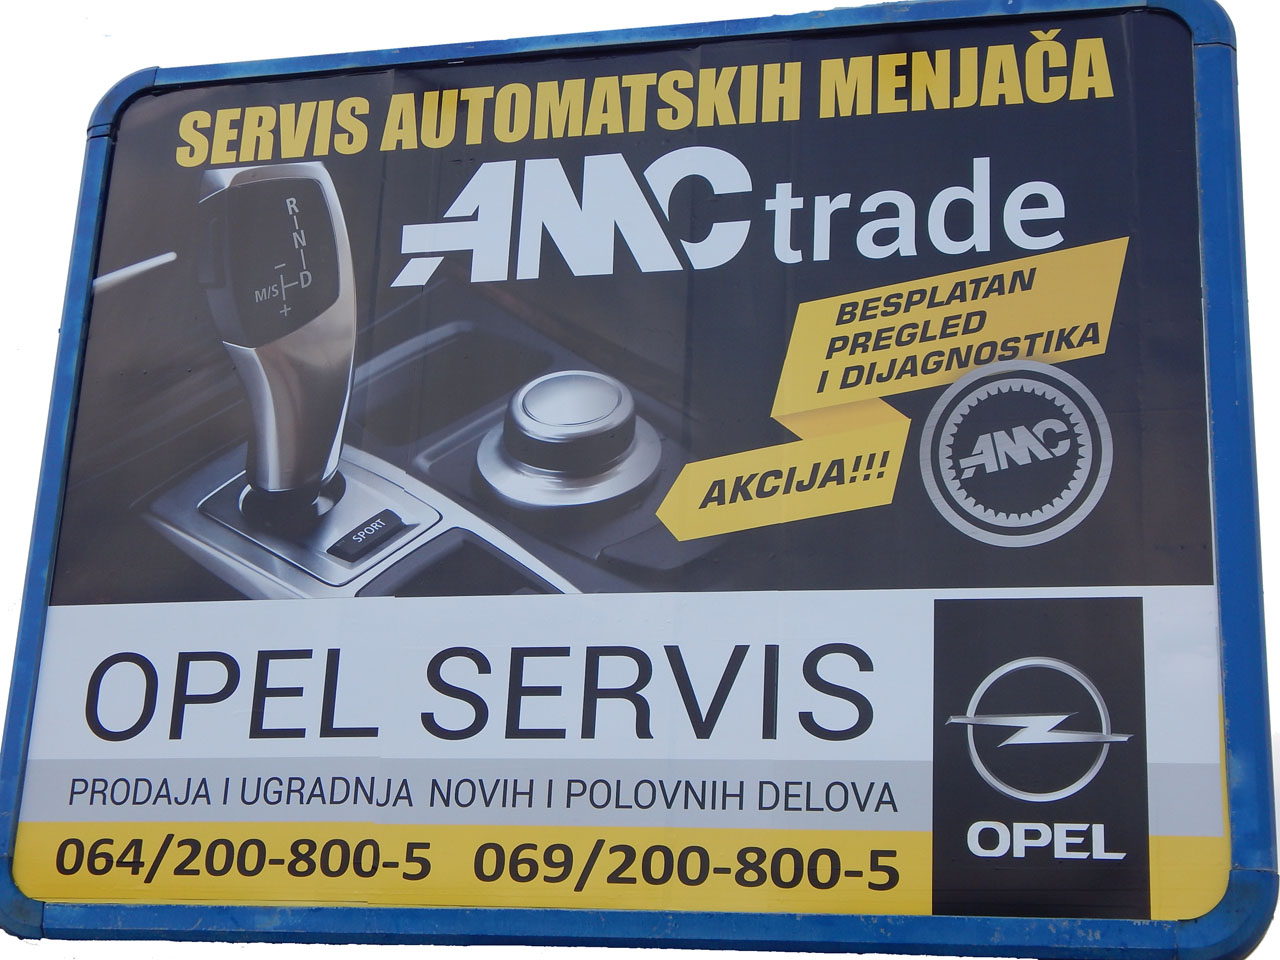 AMC TRADE Servisi automatskih menjača Beograd